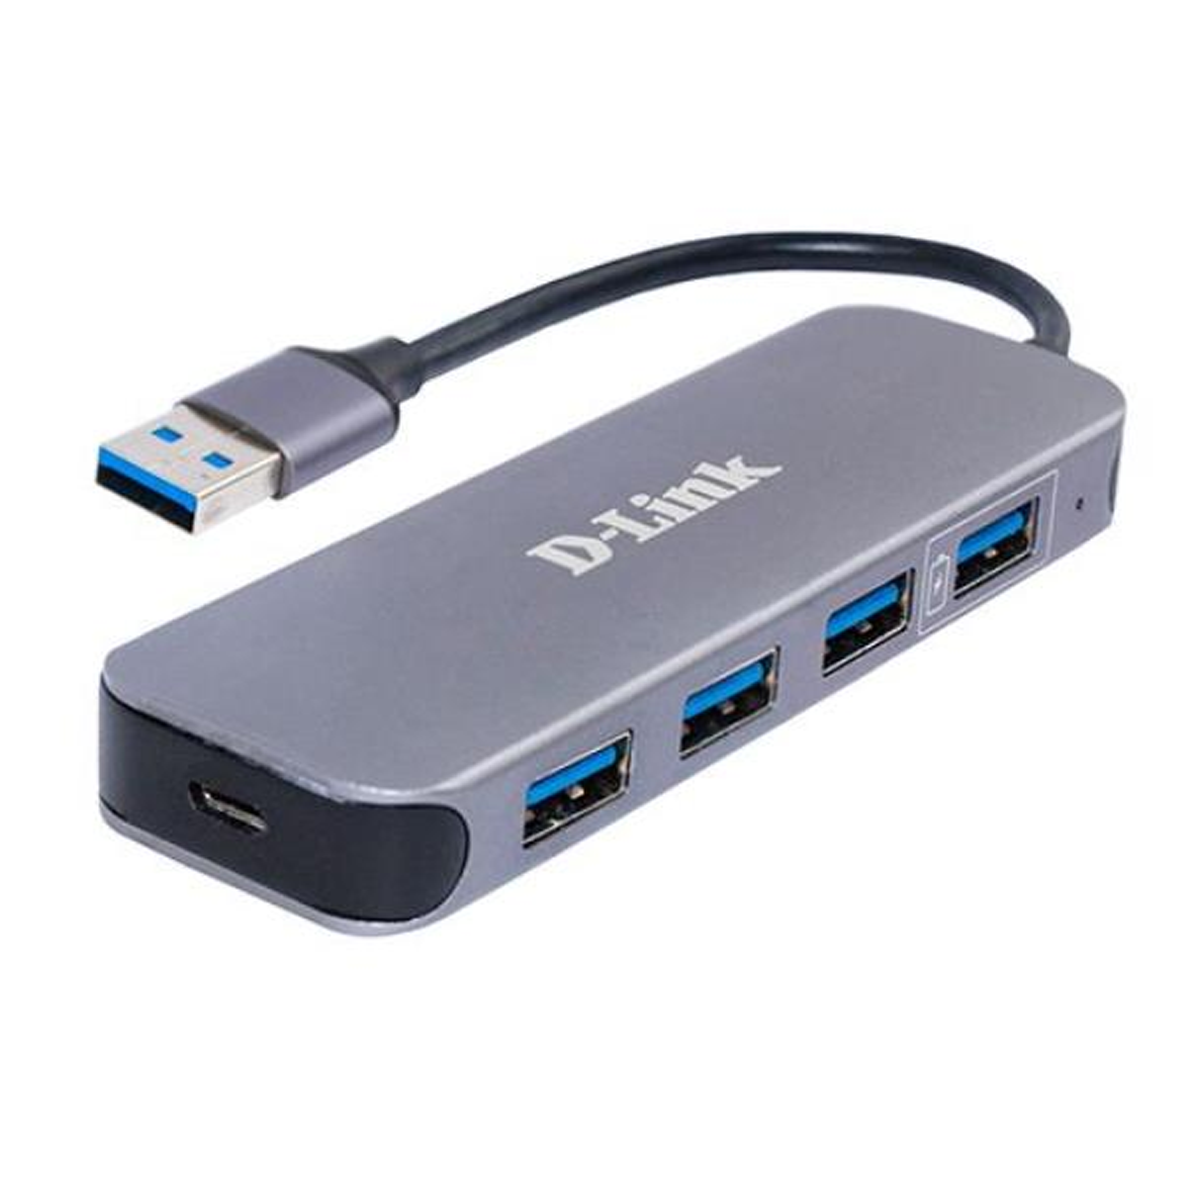 هاب USB 3.0 دی لینک 4 پورت مدل DUB-1340